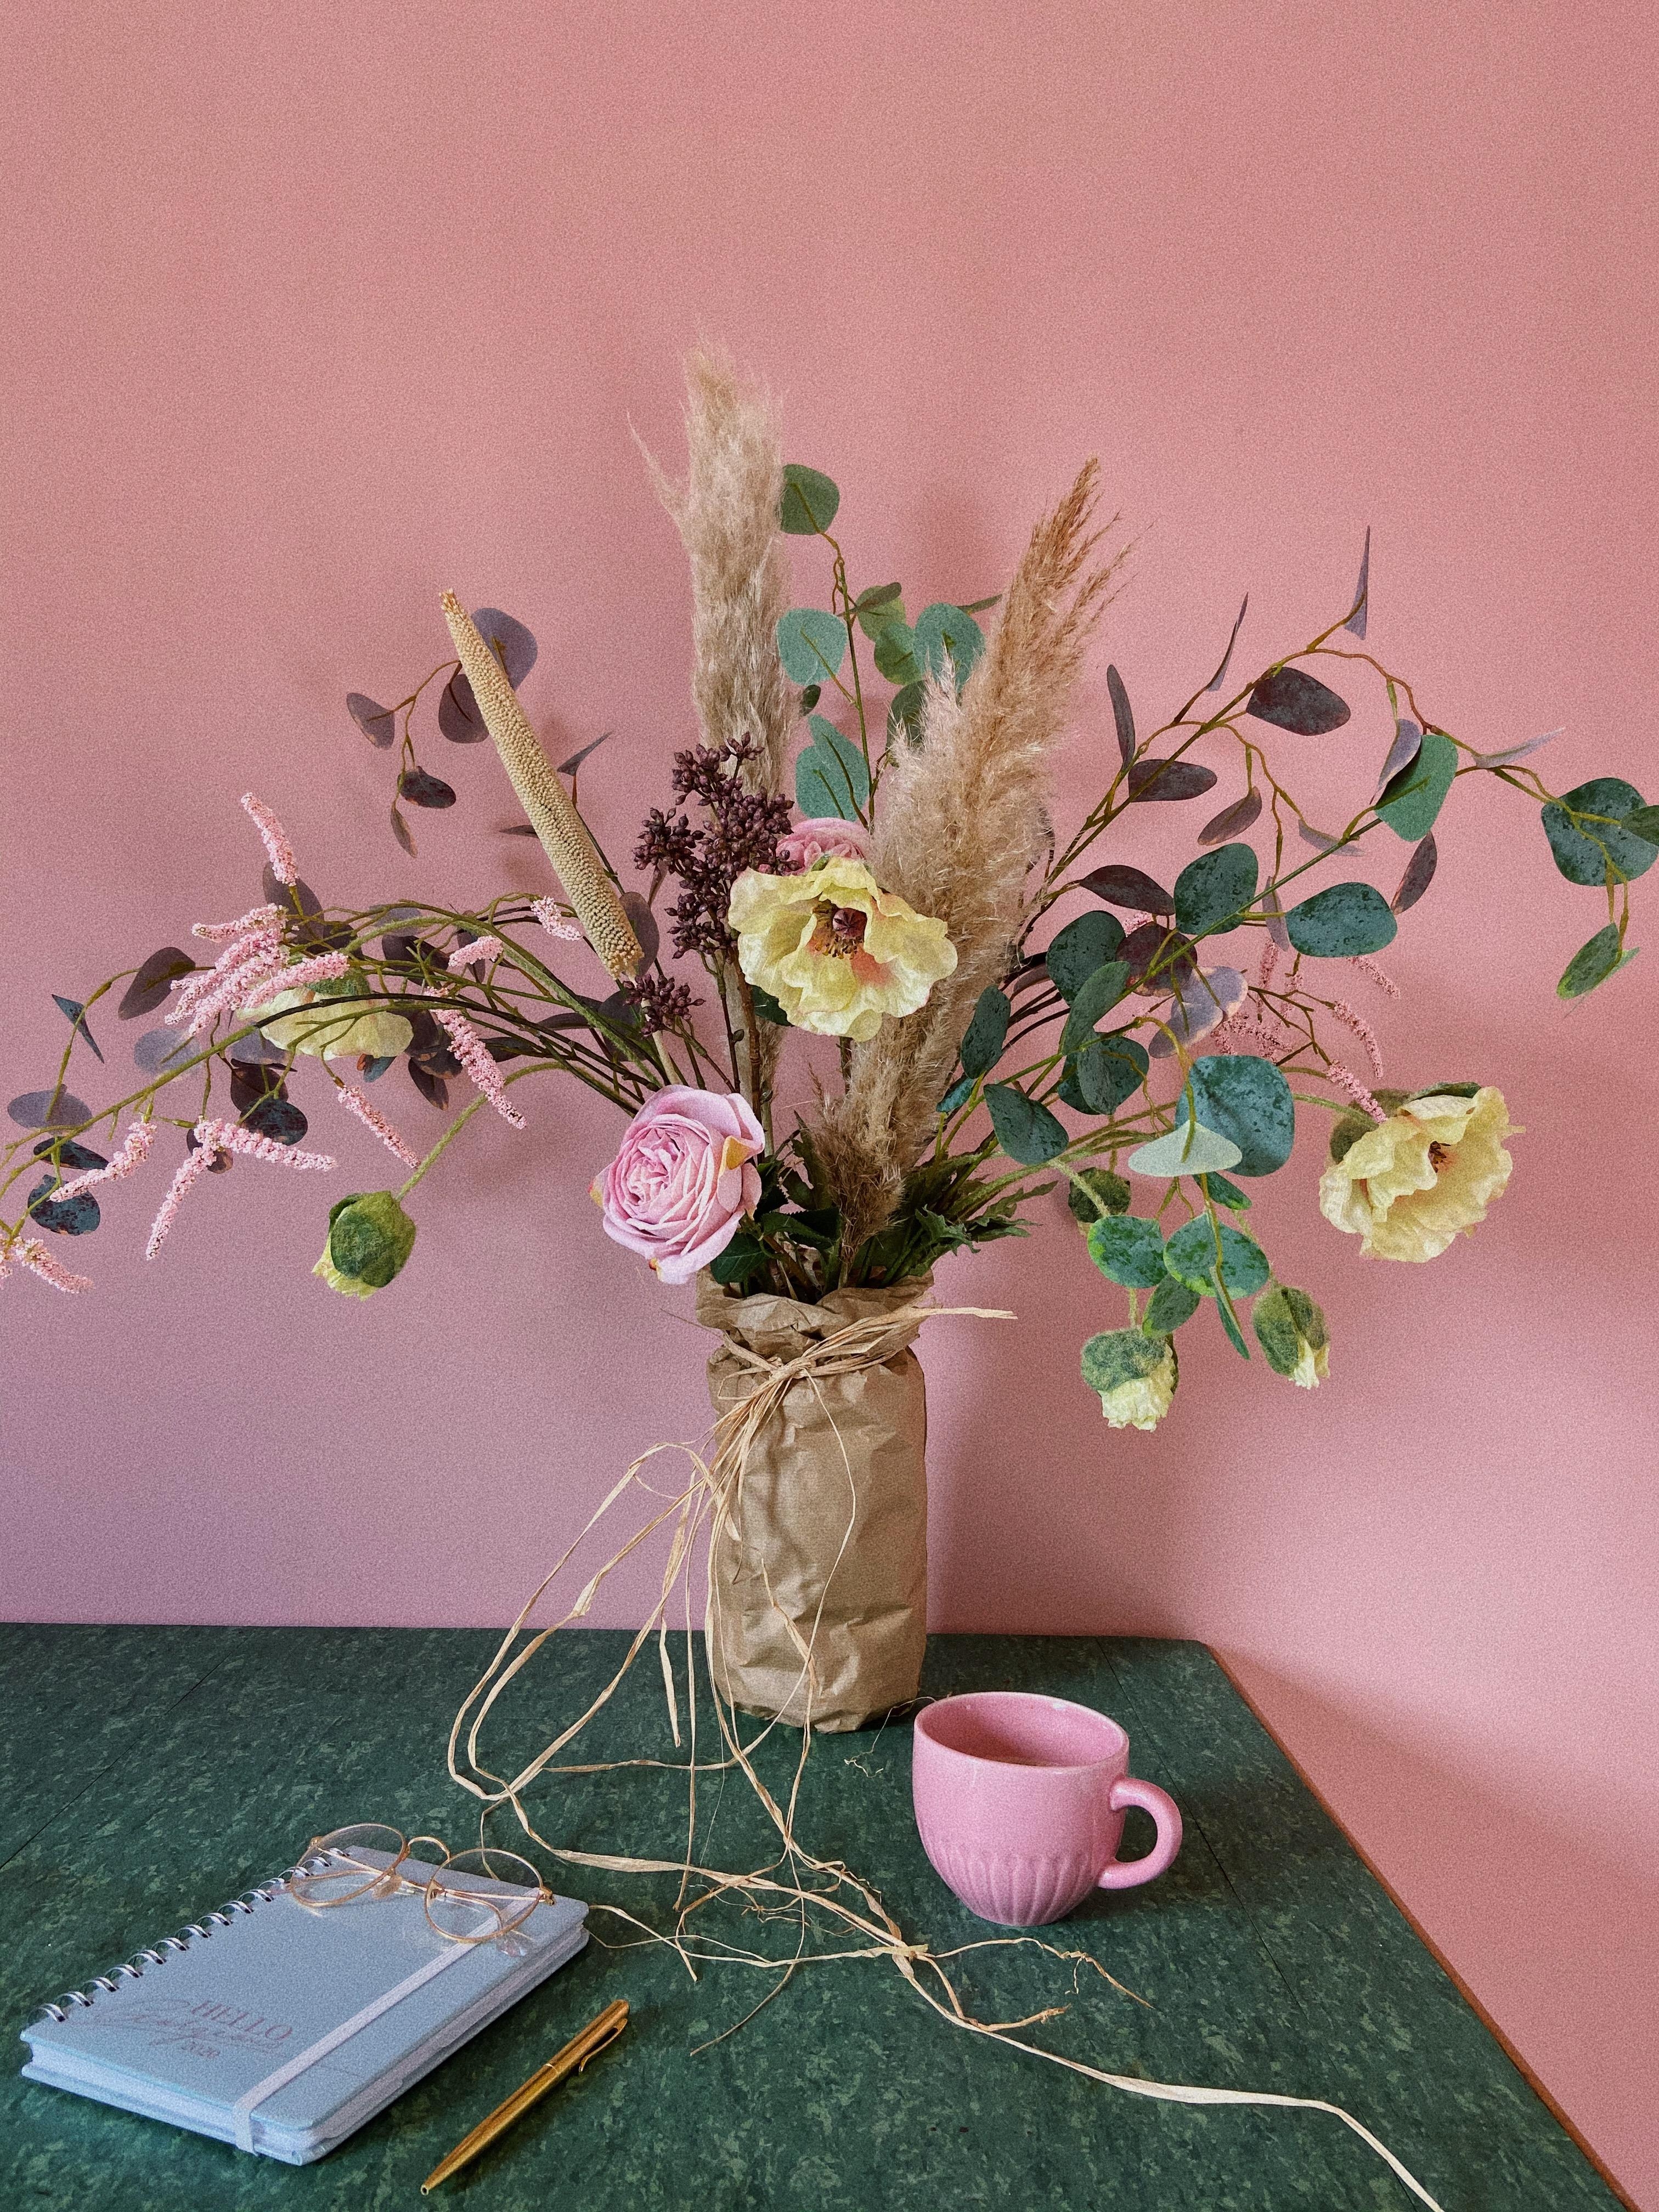 Halli Hallo ♥️ Mein selbst gebundener Blumenstrauß aus künstlichen Blumen für euch . Die Blumen sehen aus wie echt oder ?